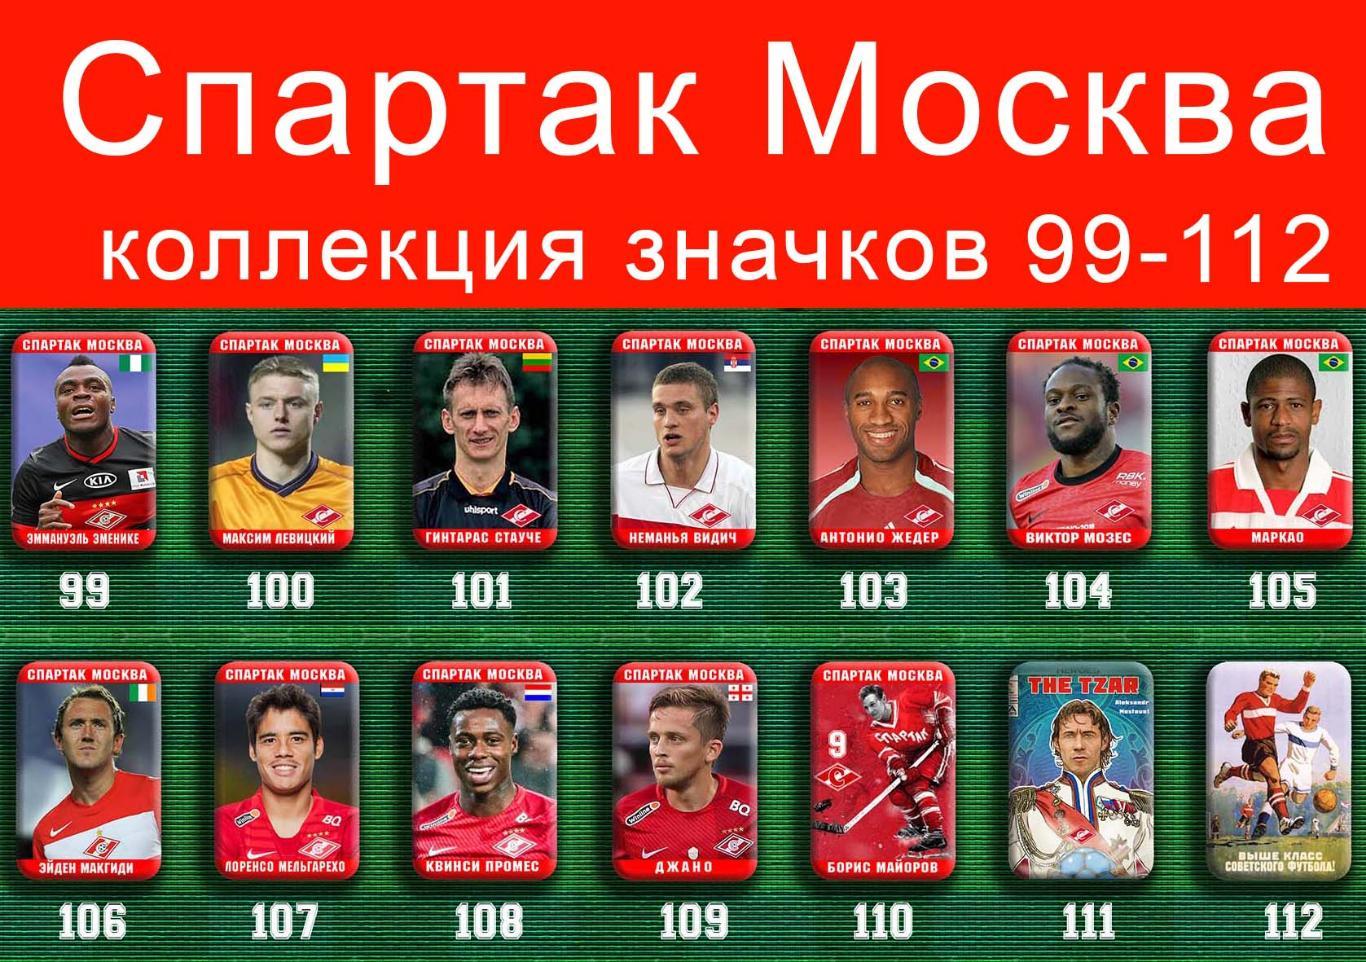 Спартак Москва 159 значков - 99-112